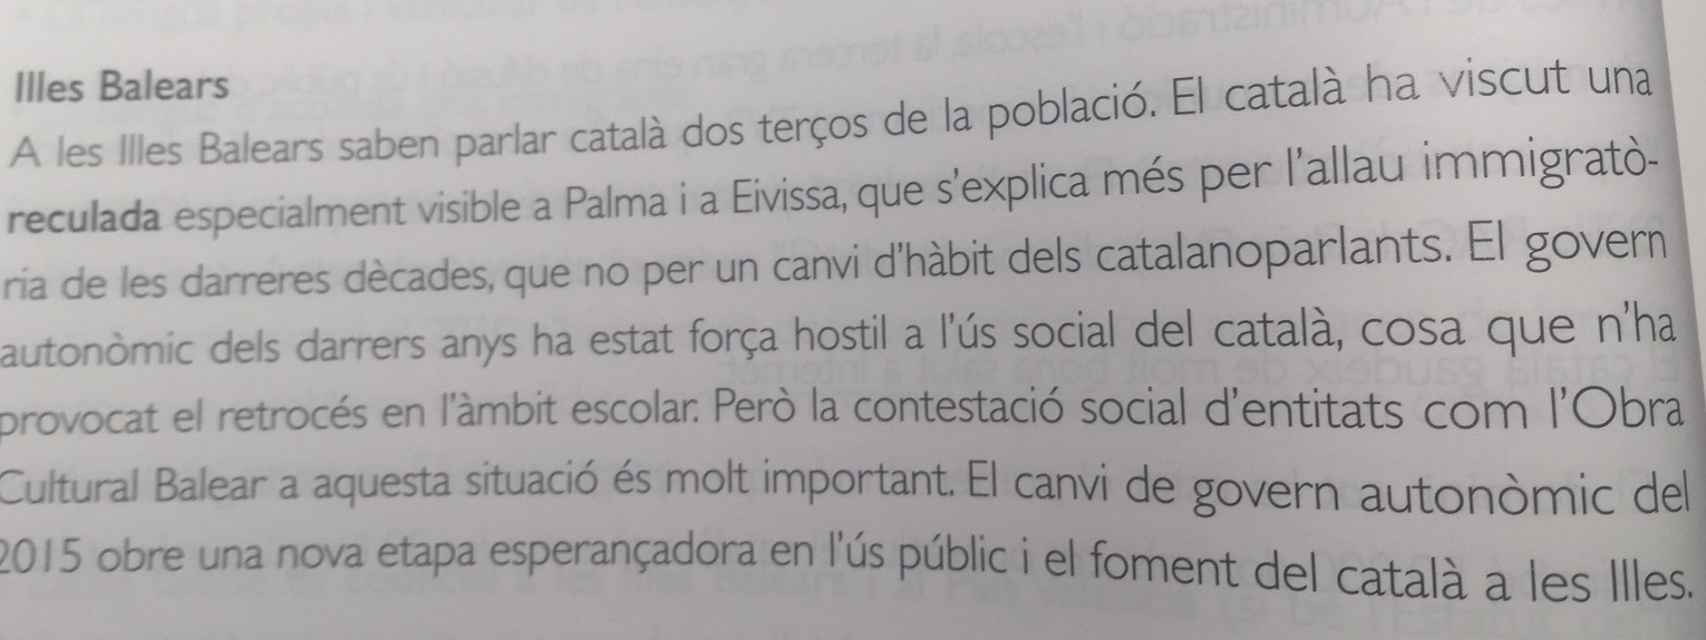 Extracto del libro de texto de Lengua y Literatura catalana.